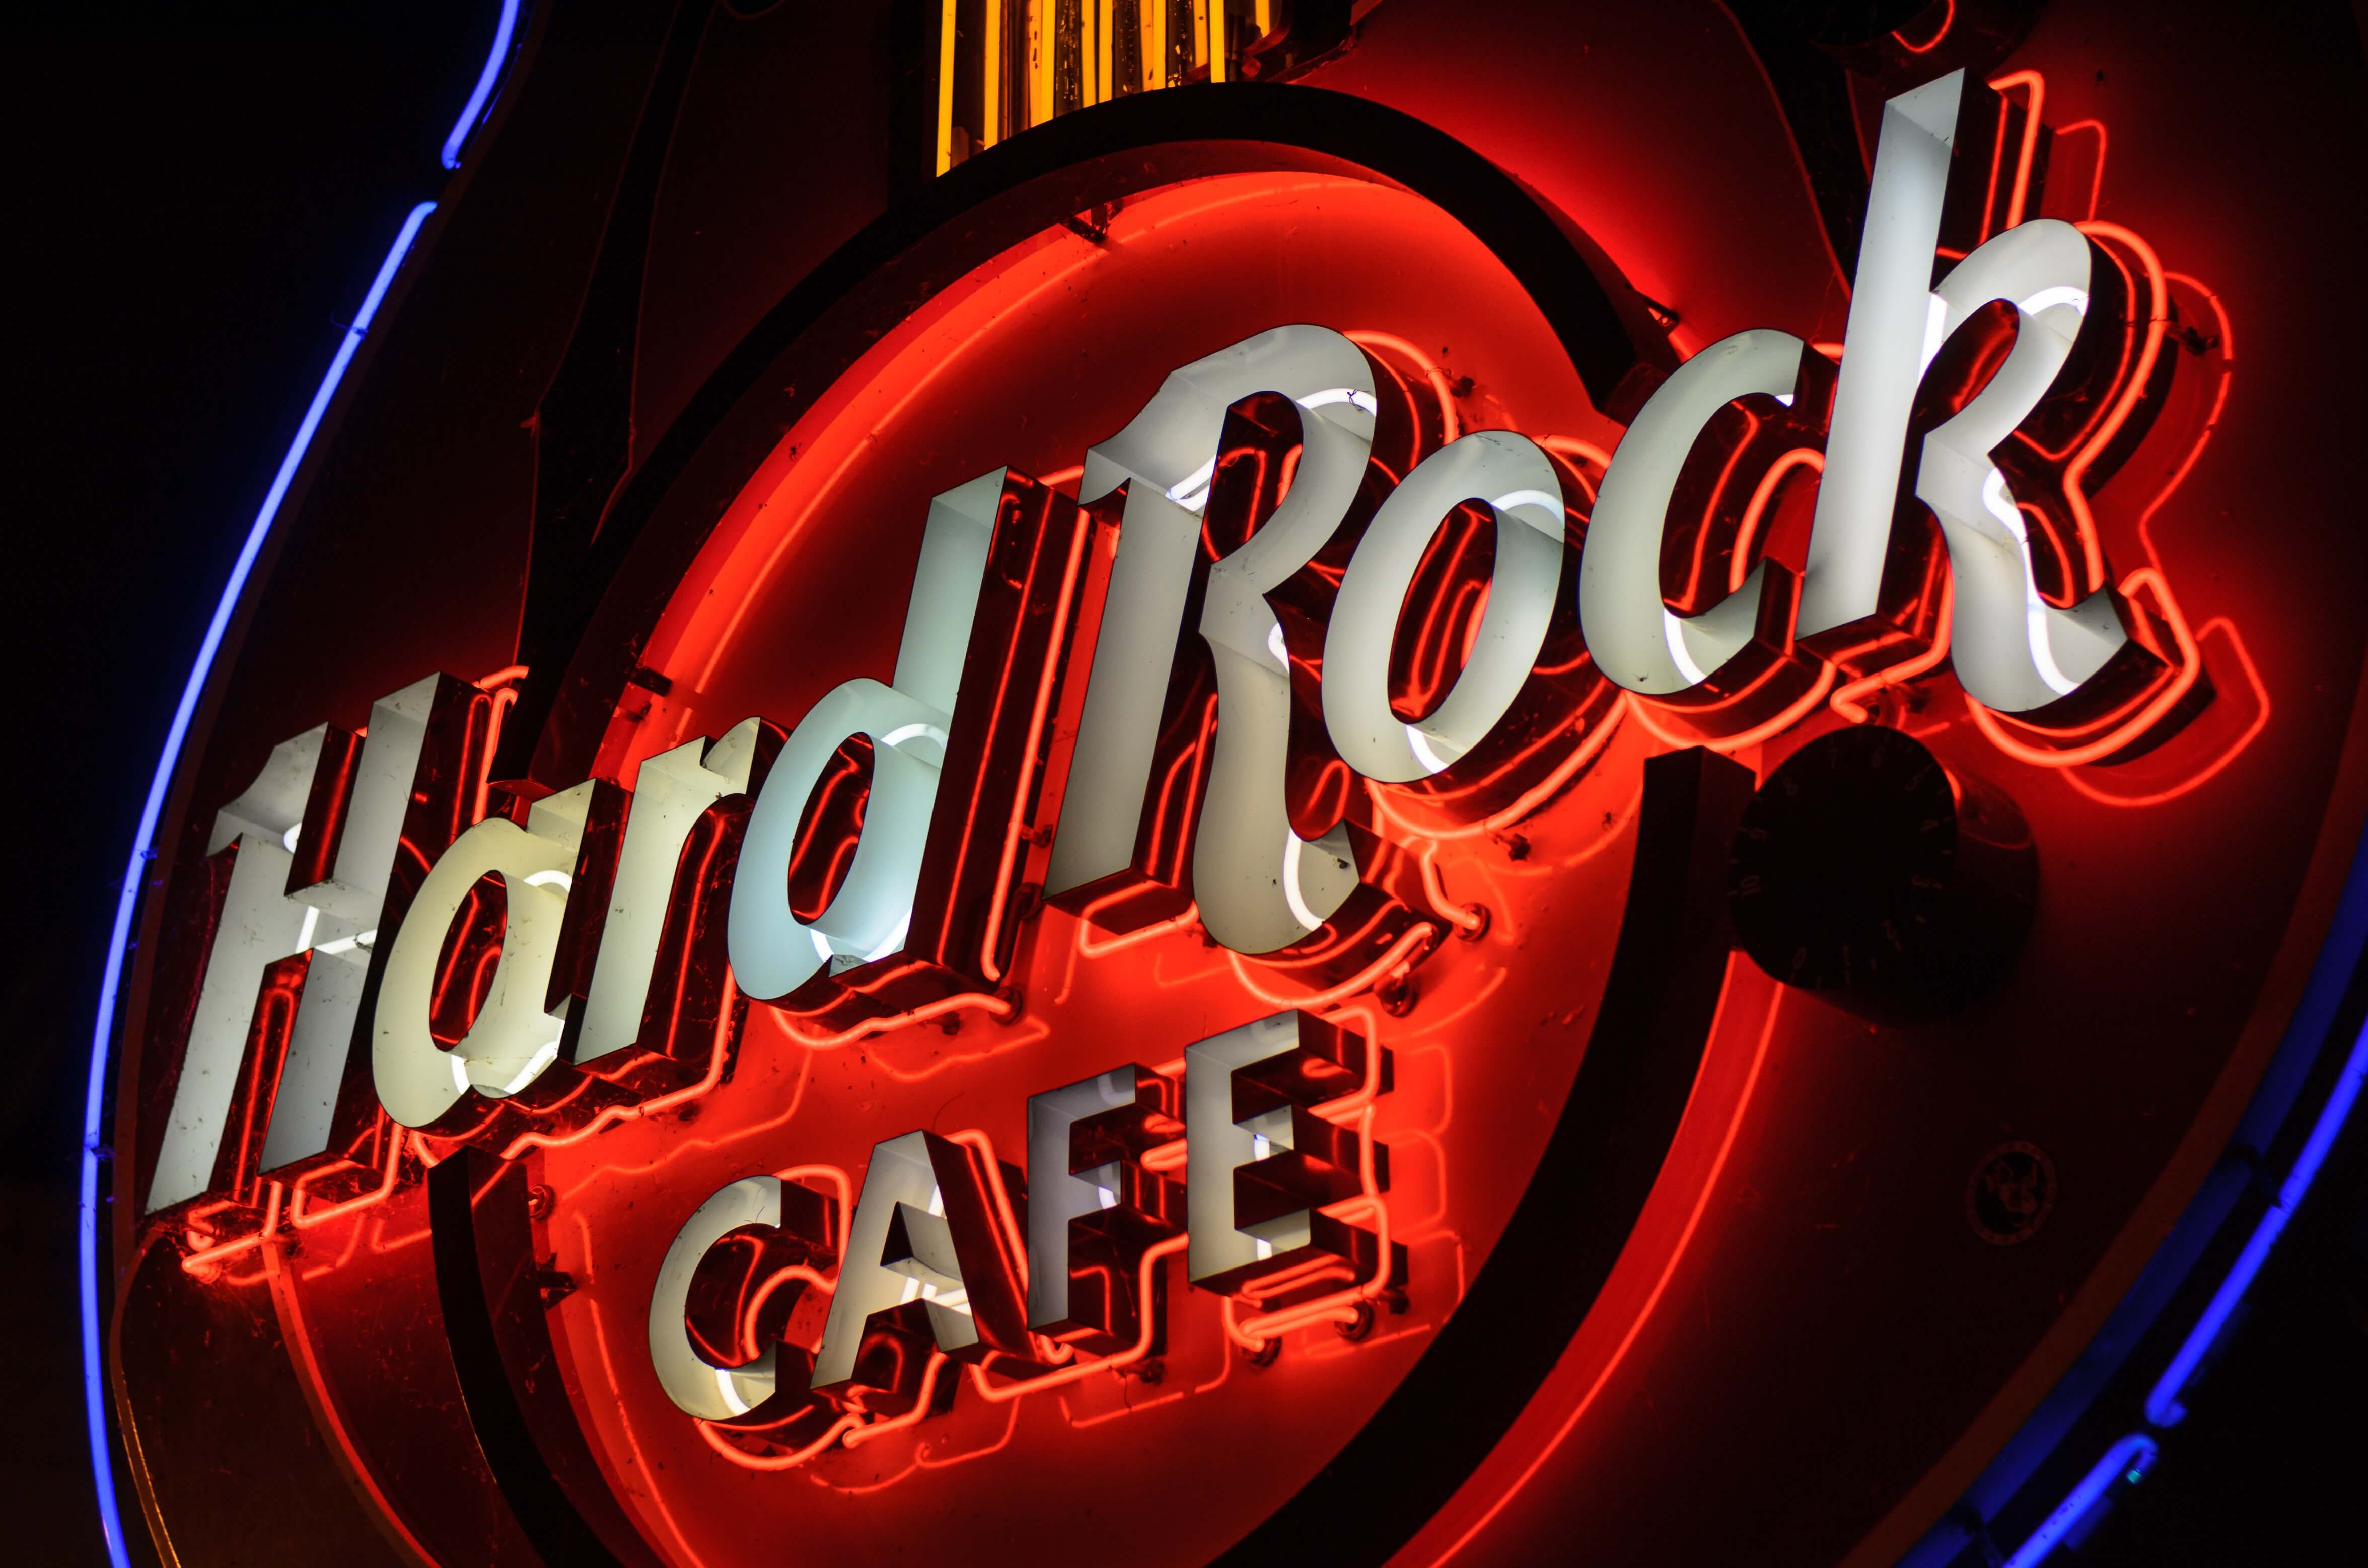 ハードロックカフェ(Hard Rock Cafe)2008年株主優待WDIピン ファッション www.seprocicam.gob.mx